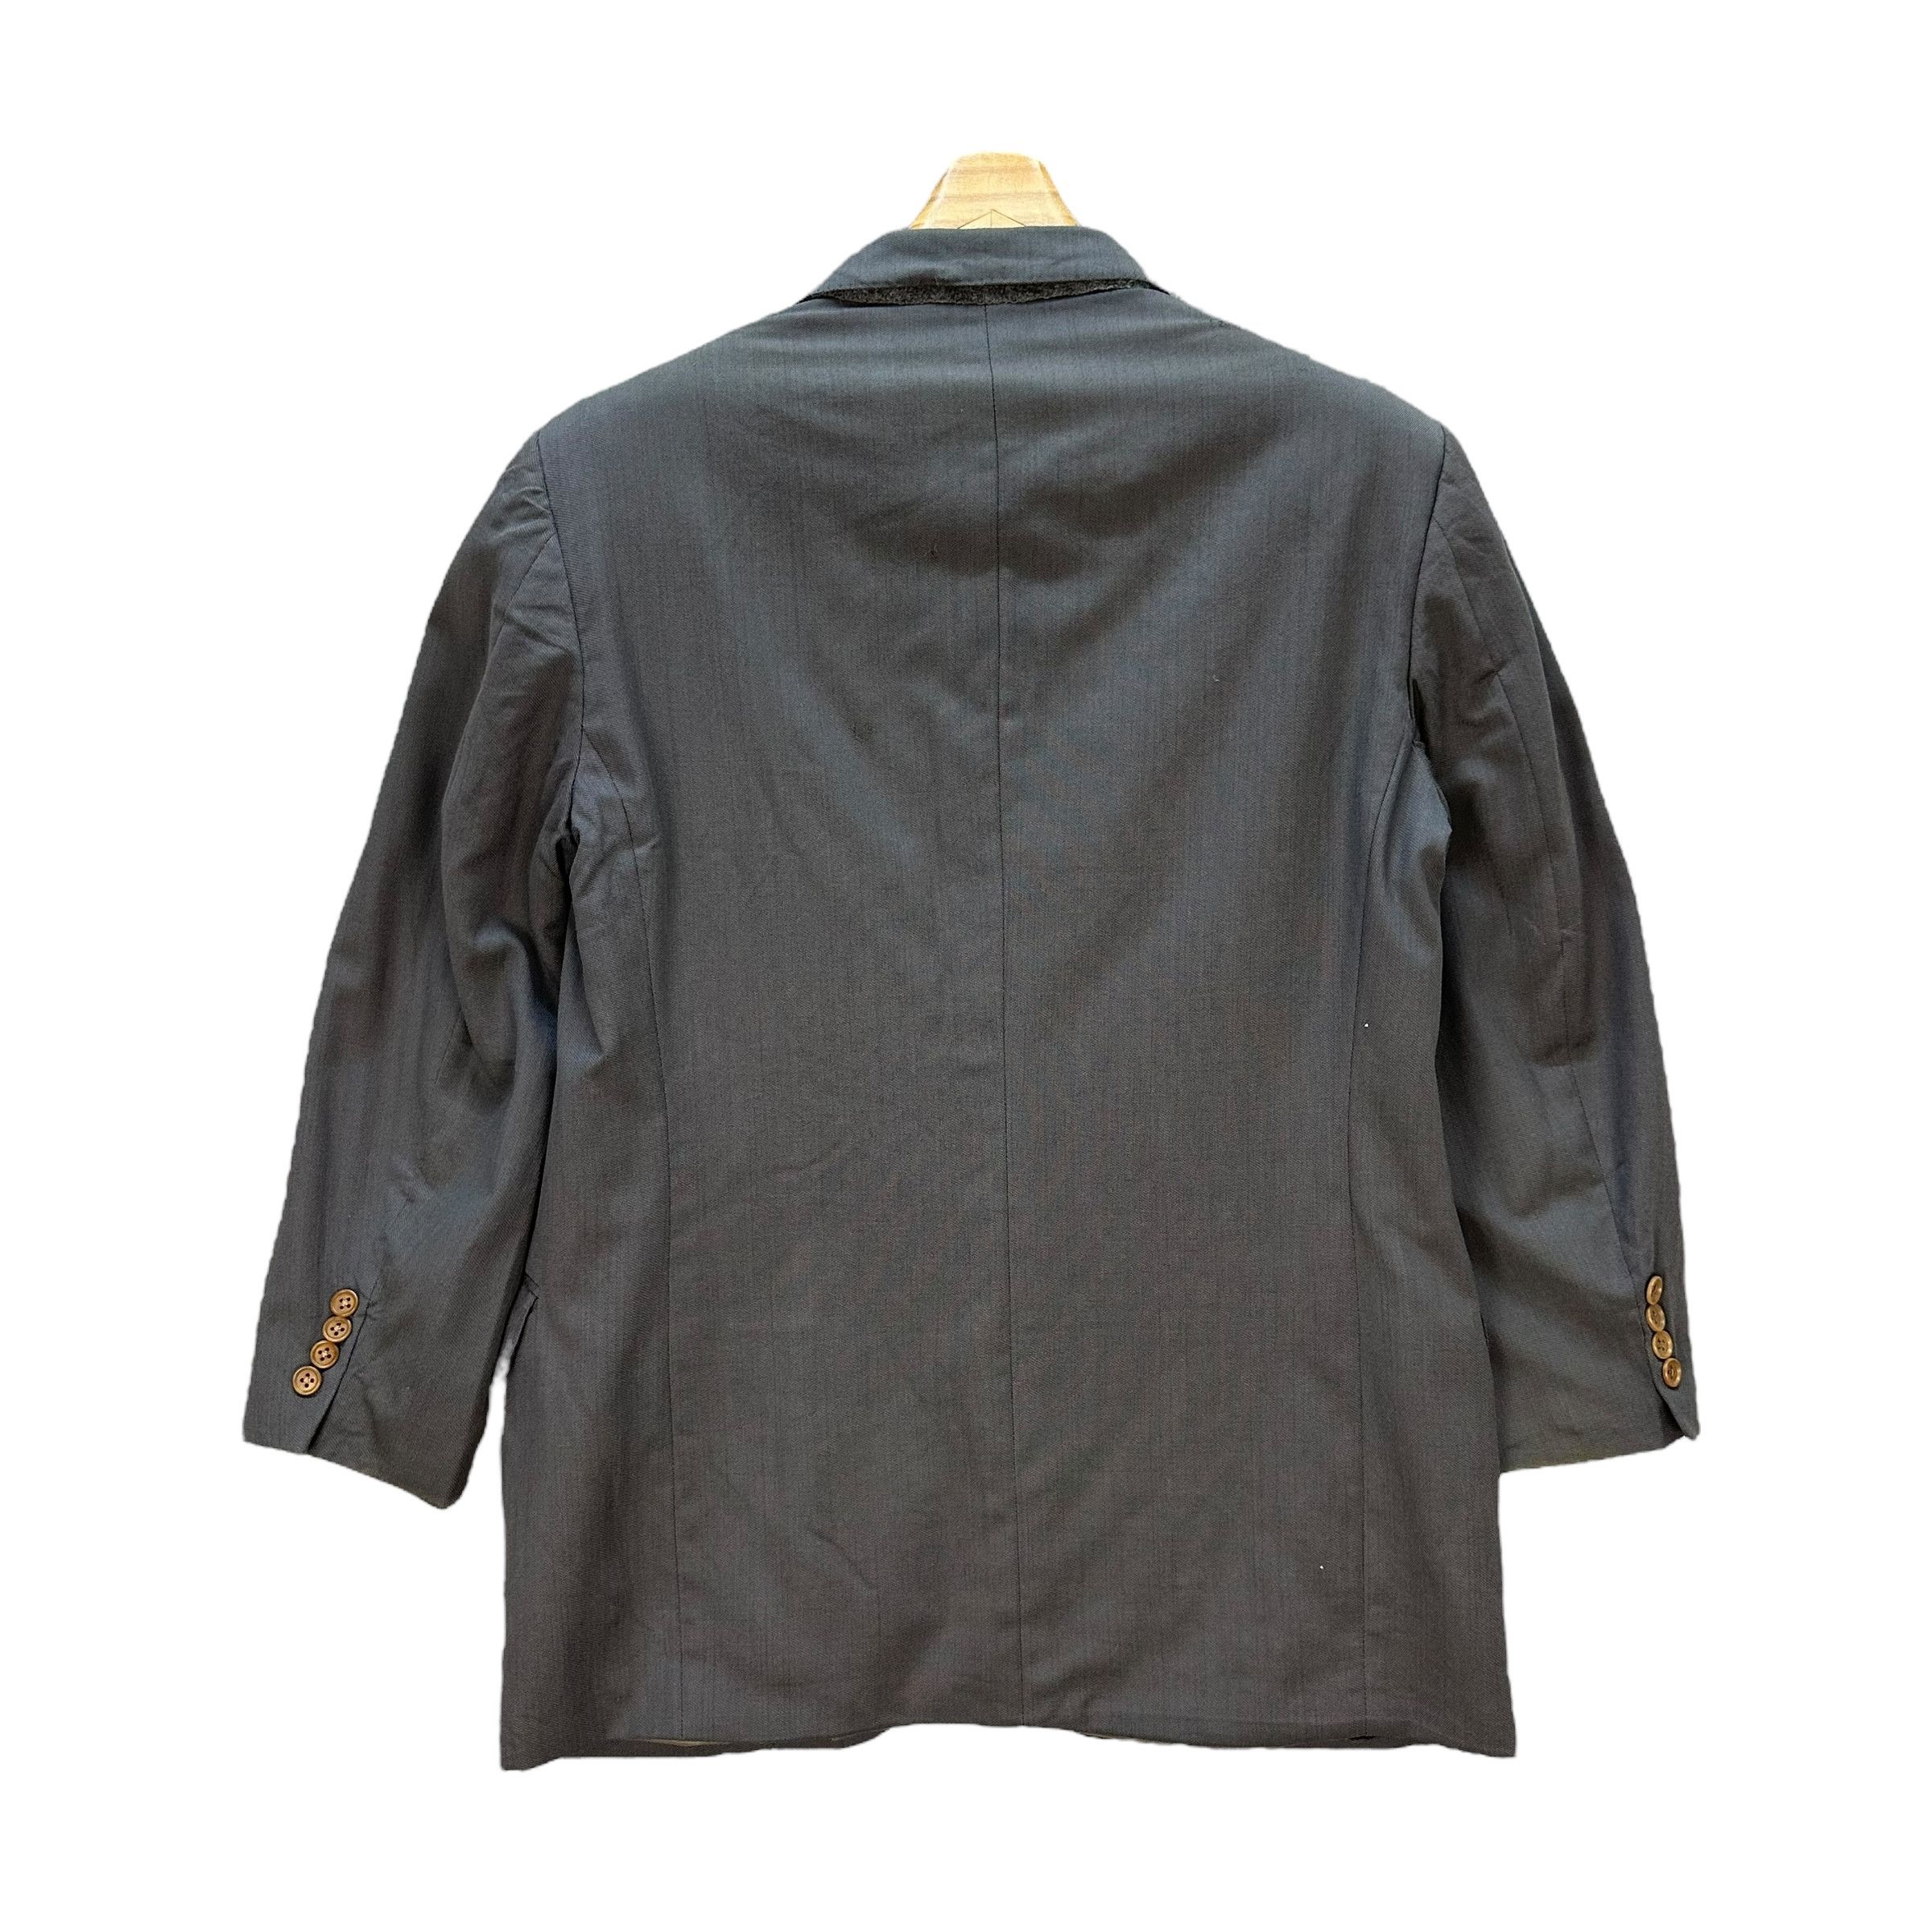 Lanvin Paris Suit Jacket / Blazer #9139-61 - 11